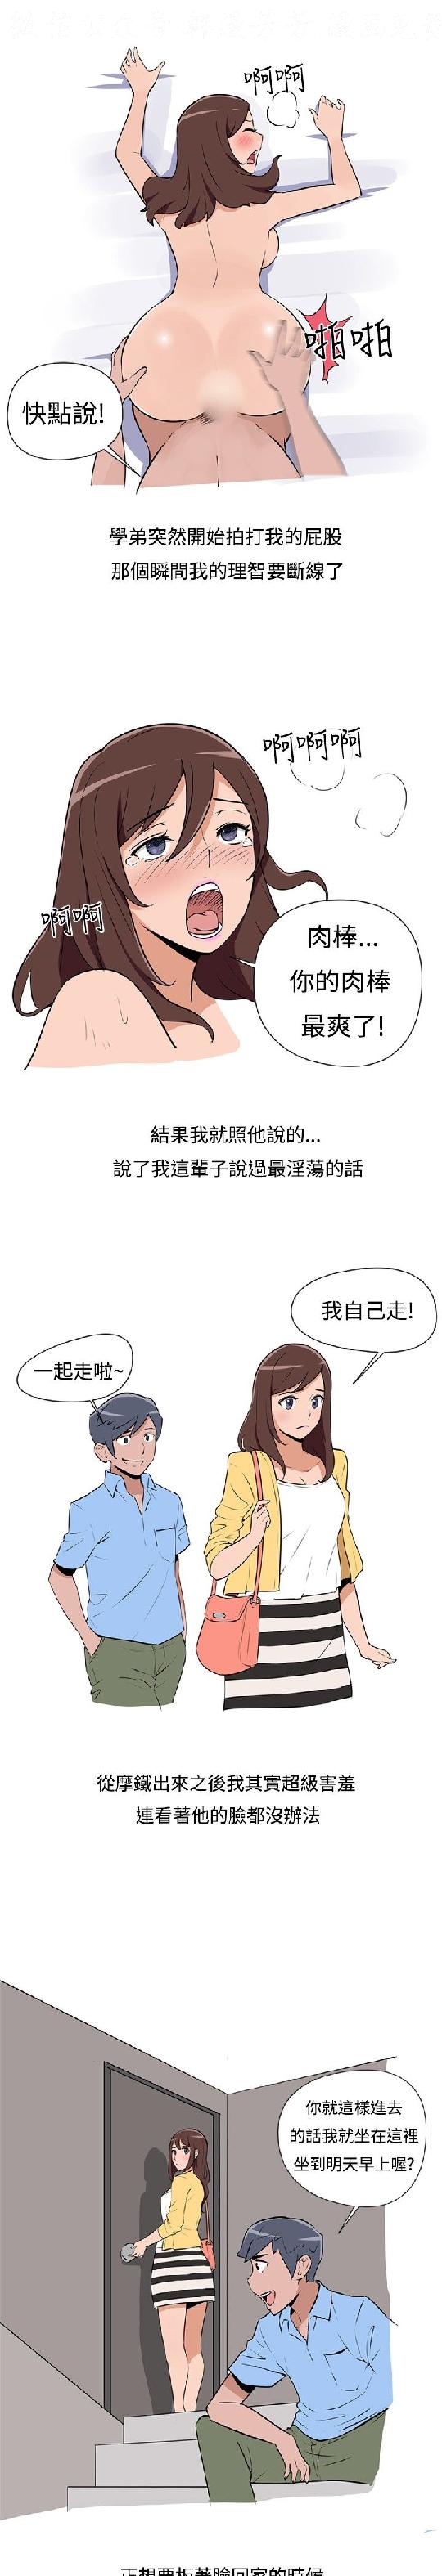 調教女大生【中文】 page 25 full